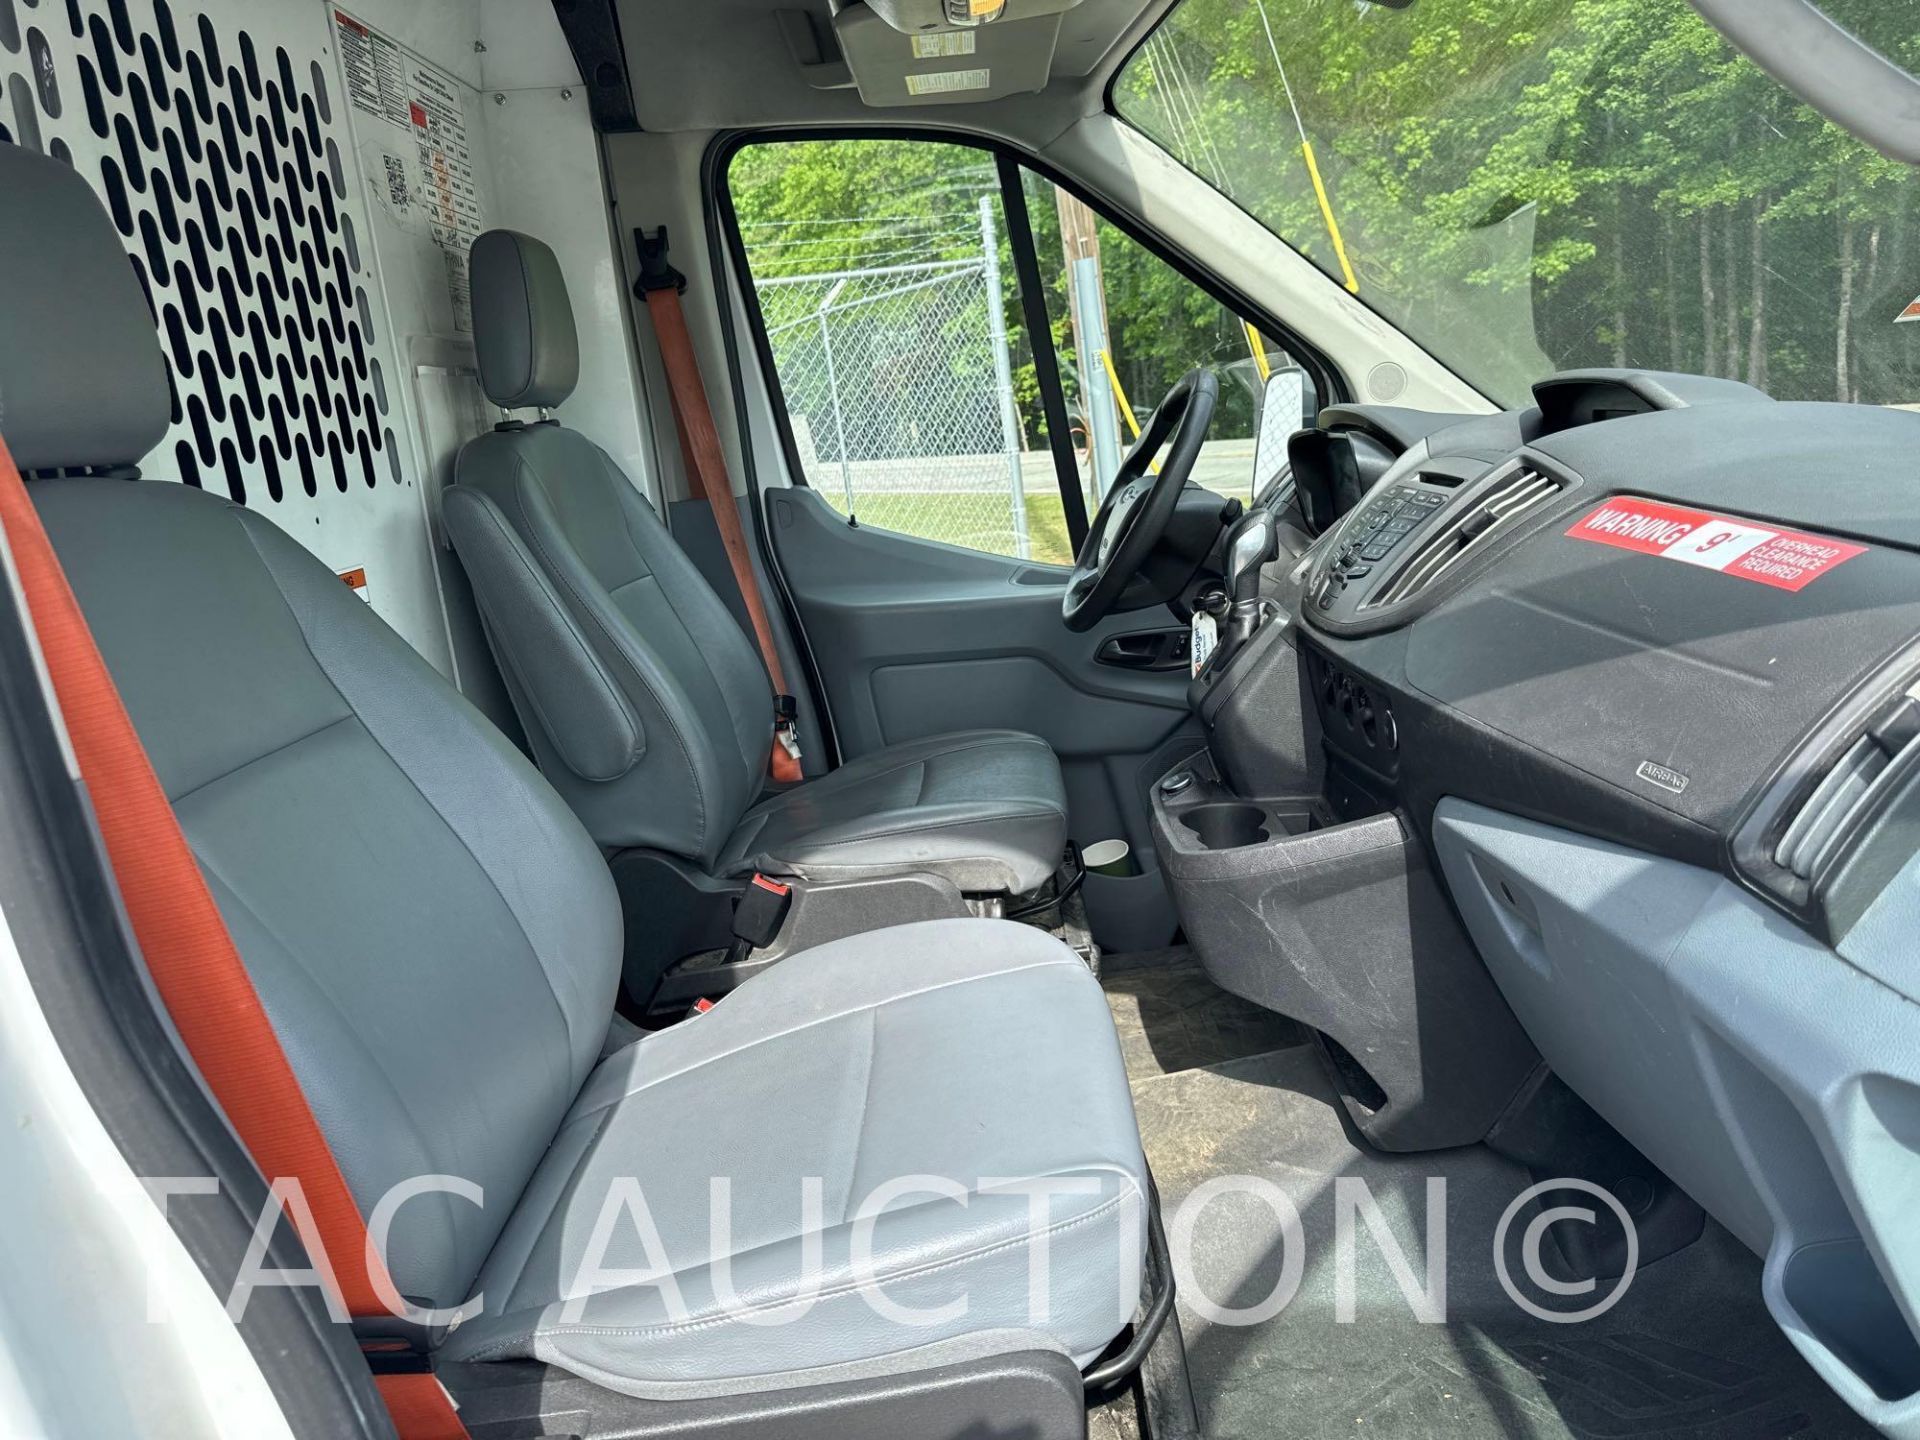 2019 Ford Transit 150 Cargo Van - Image 16 of 43